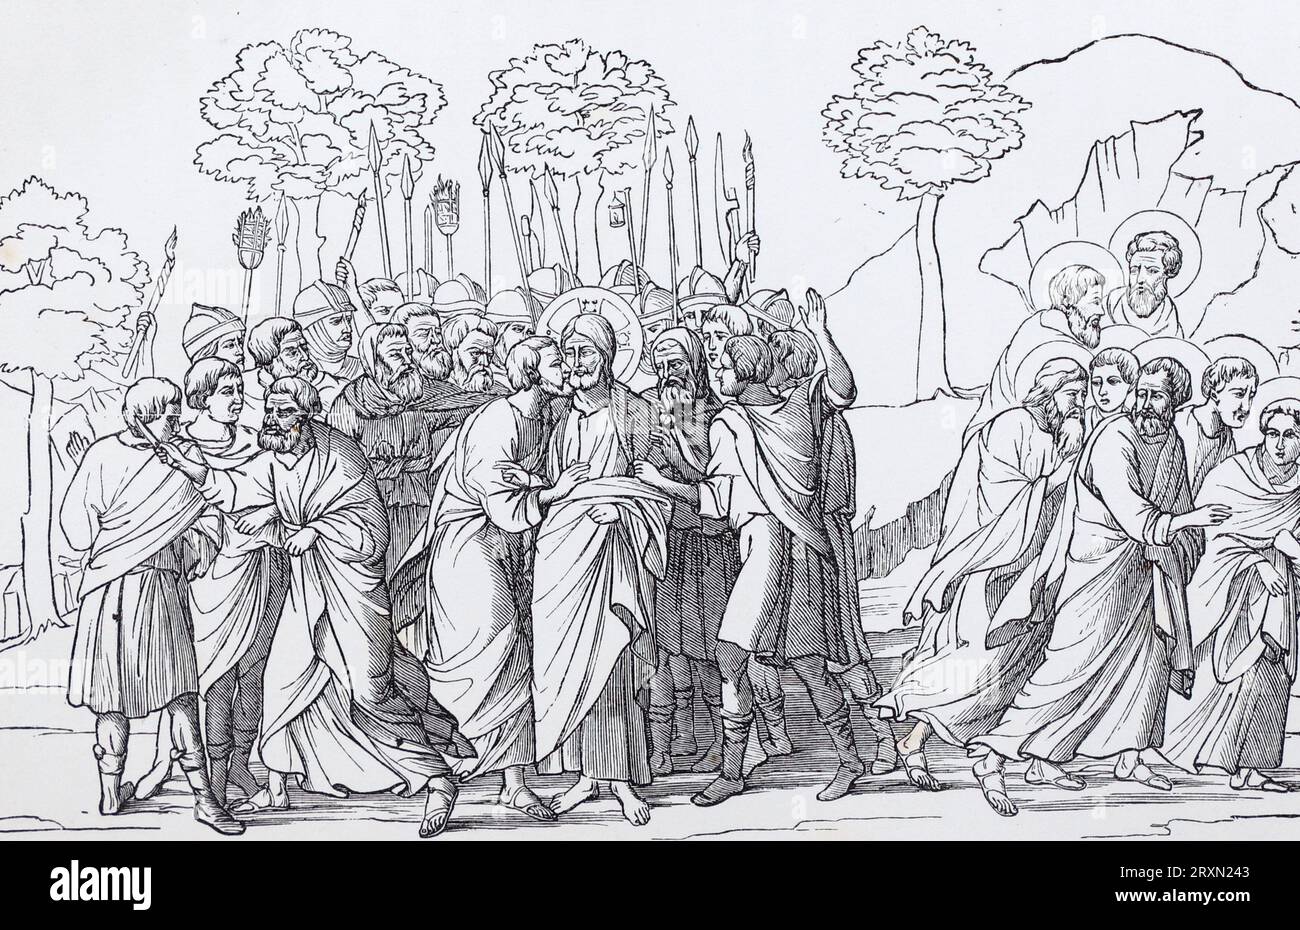 La trahison de Jésus, Saint Pierre coupant l'oreille de Malchus, et les disciples fuyant. D'après une peinture du 16e siècle de Duccio di Buoninsegna. Gravure de vies des Saints de Sabin Baring-Gould publiée en 1897. Banque D'Images